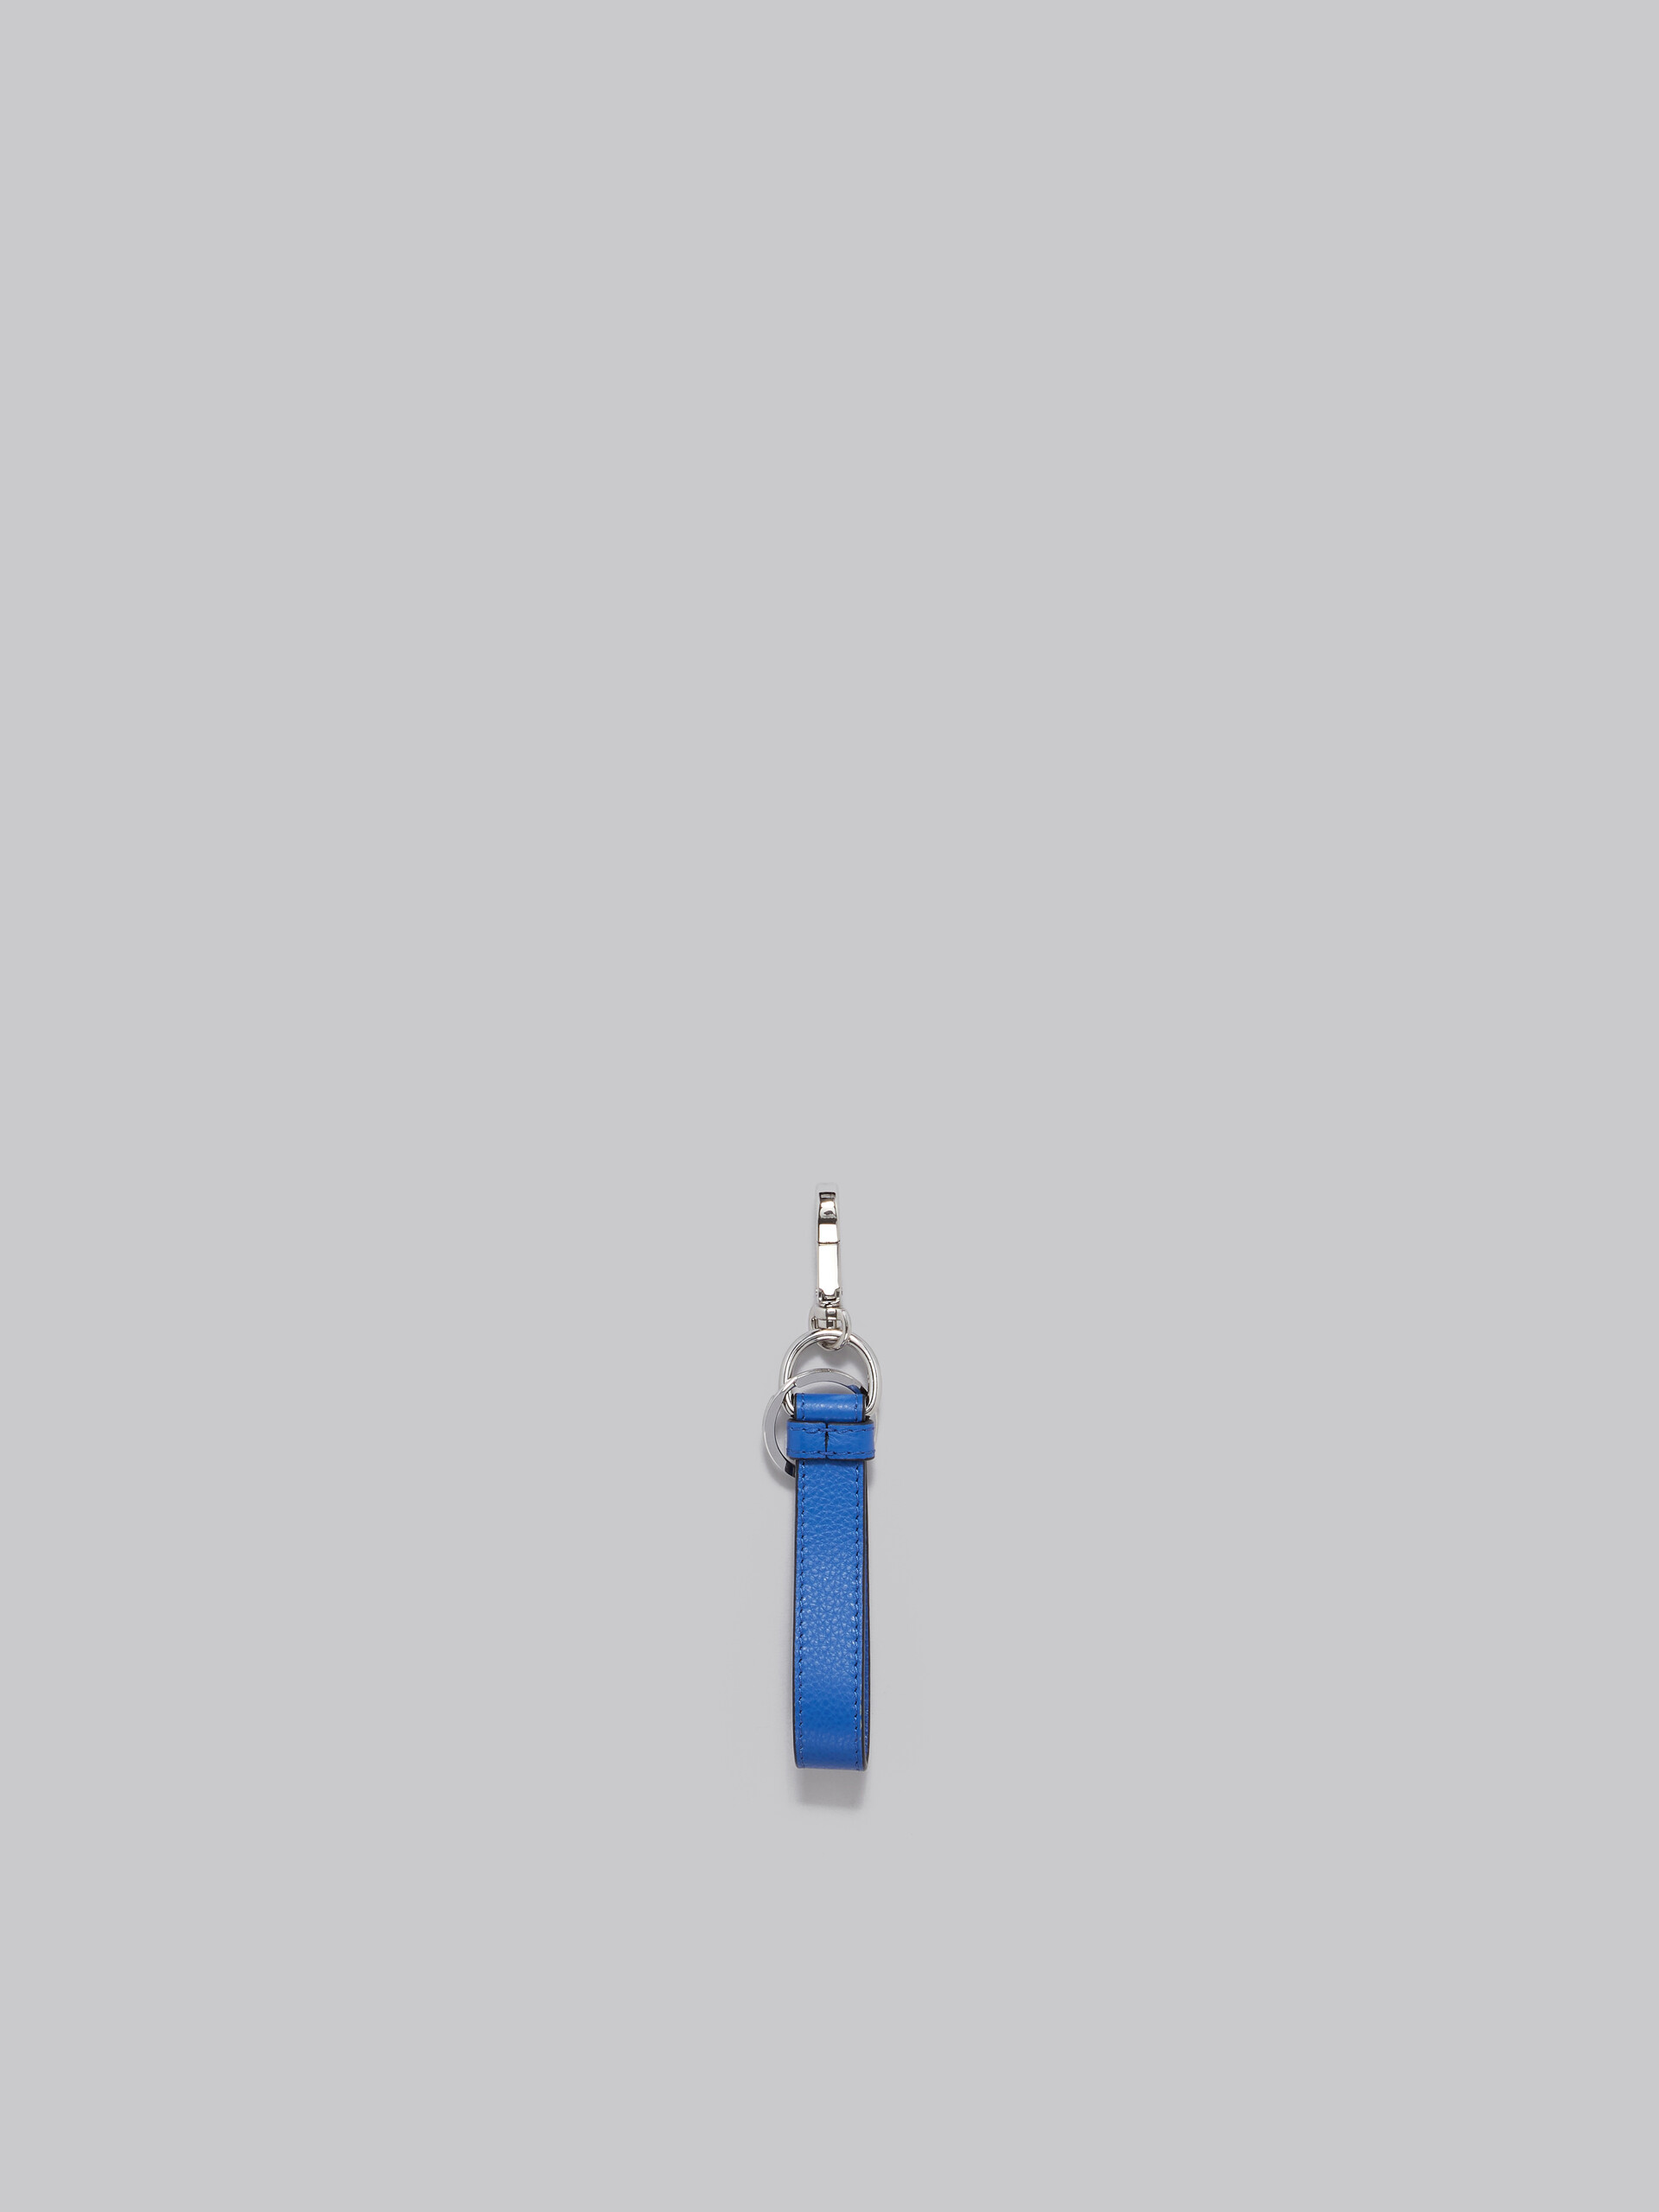 ブルー レザー製キーリング、 マルニメンディング装飾 - キーホルダー - Image 3